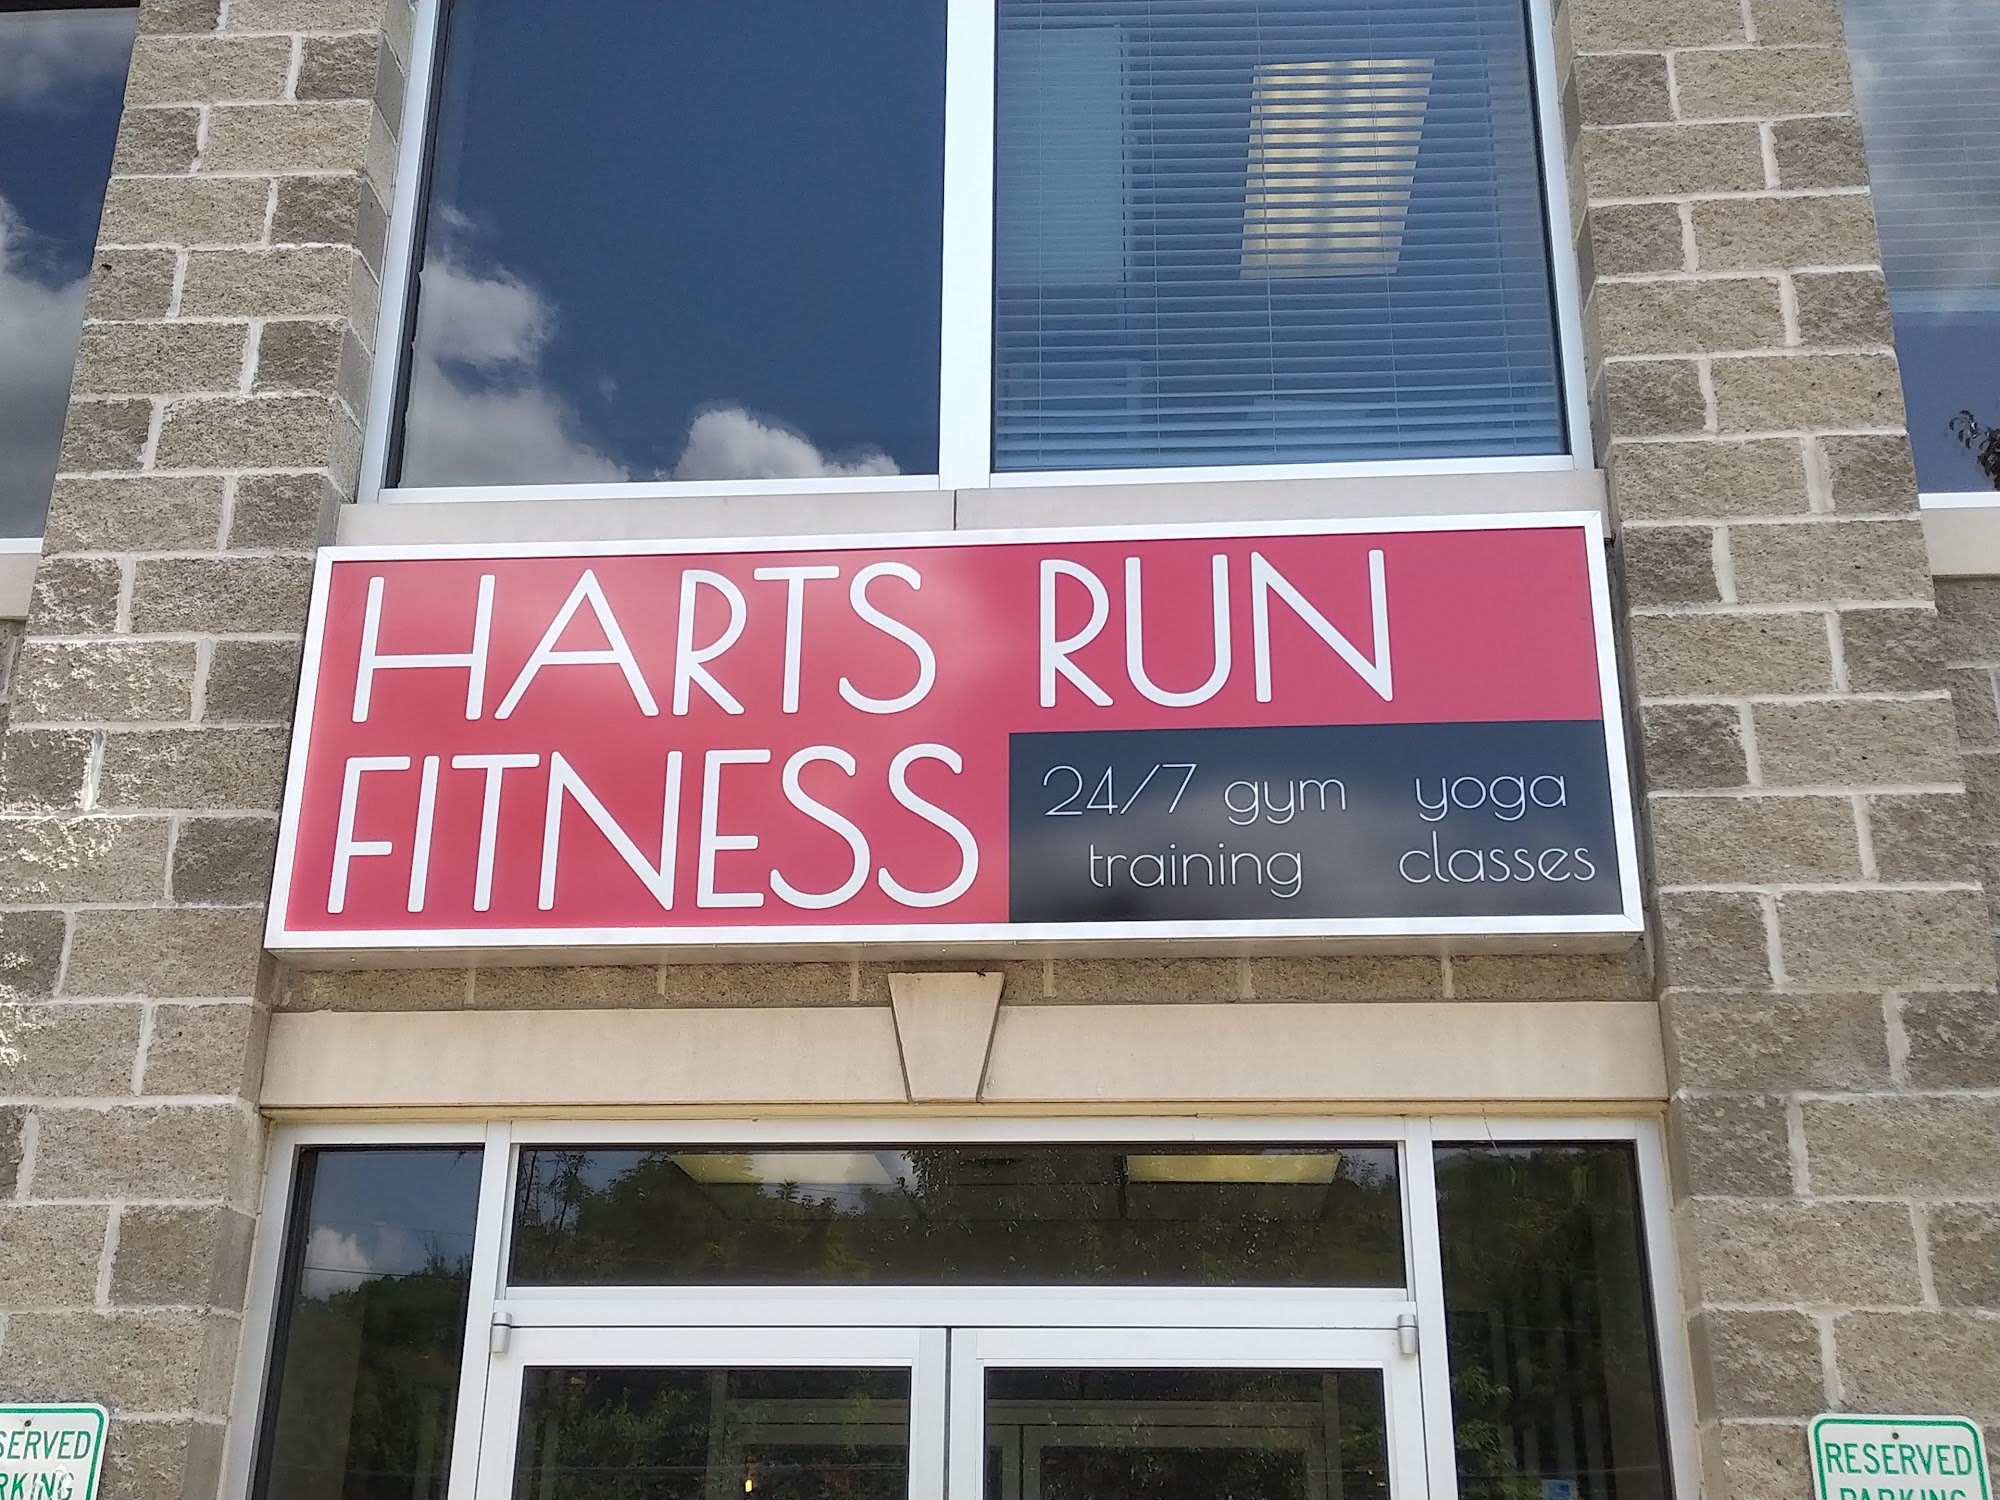 Harts Run Fitness 3390 Saxonburg Blvd #120, Glenshaw Pennsylvania 15116